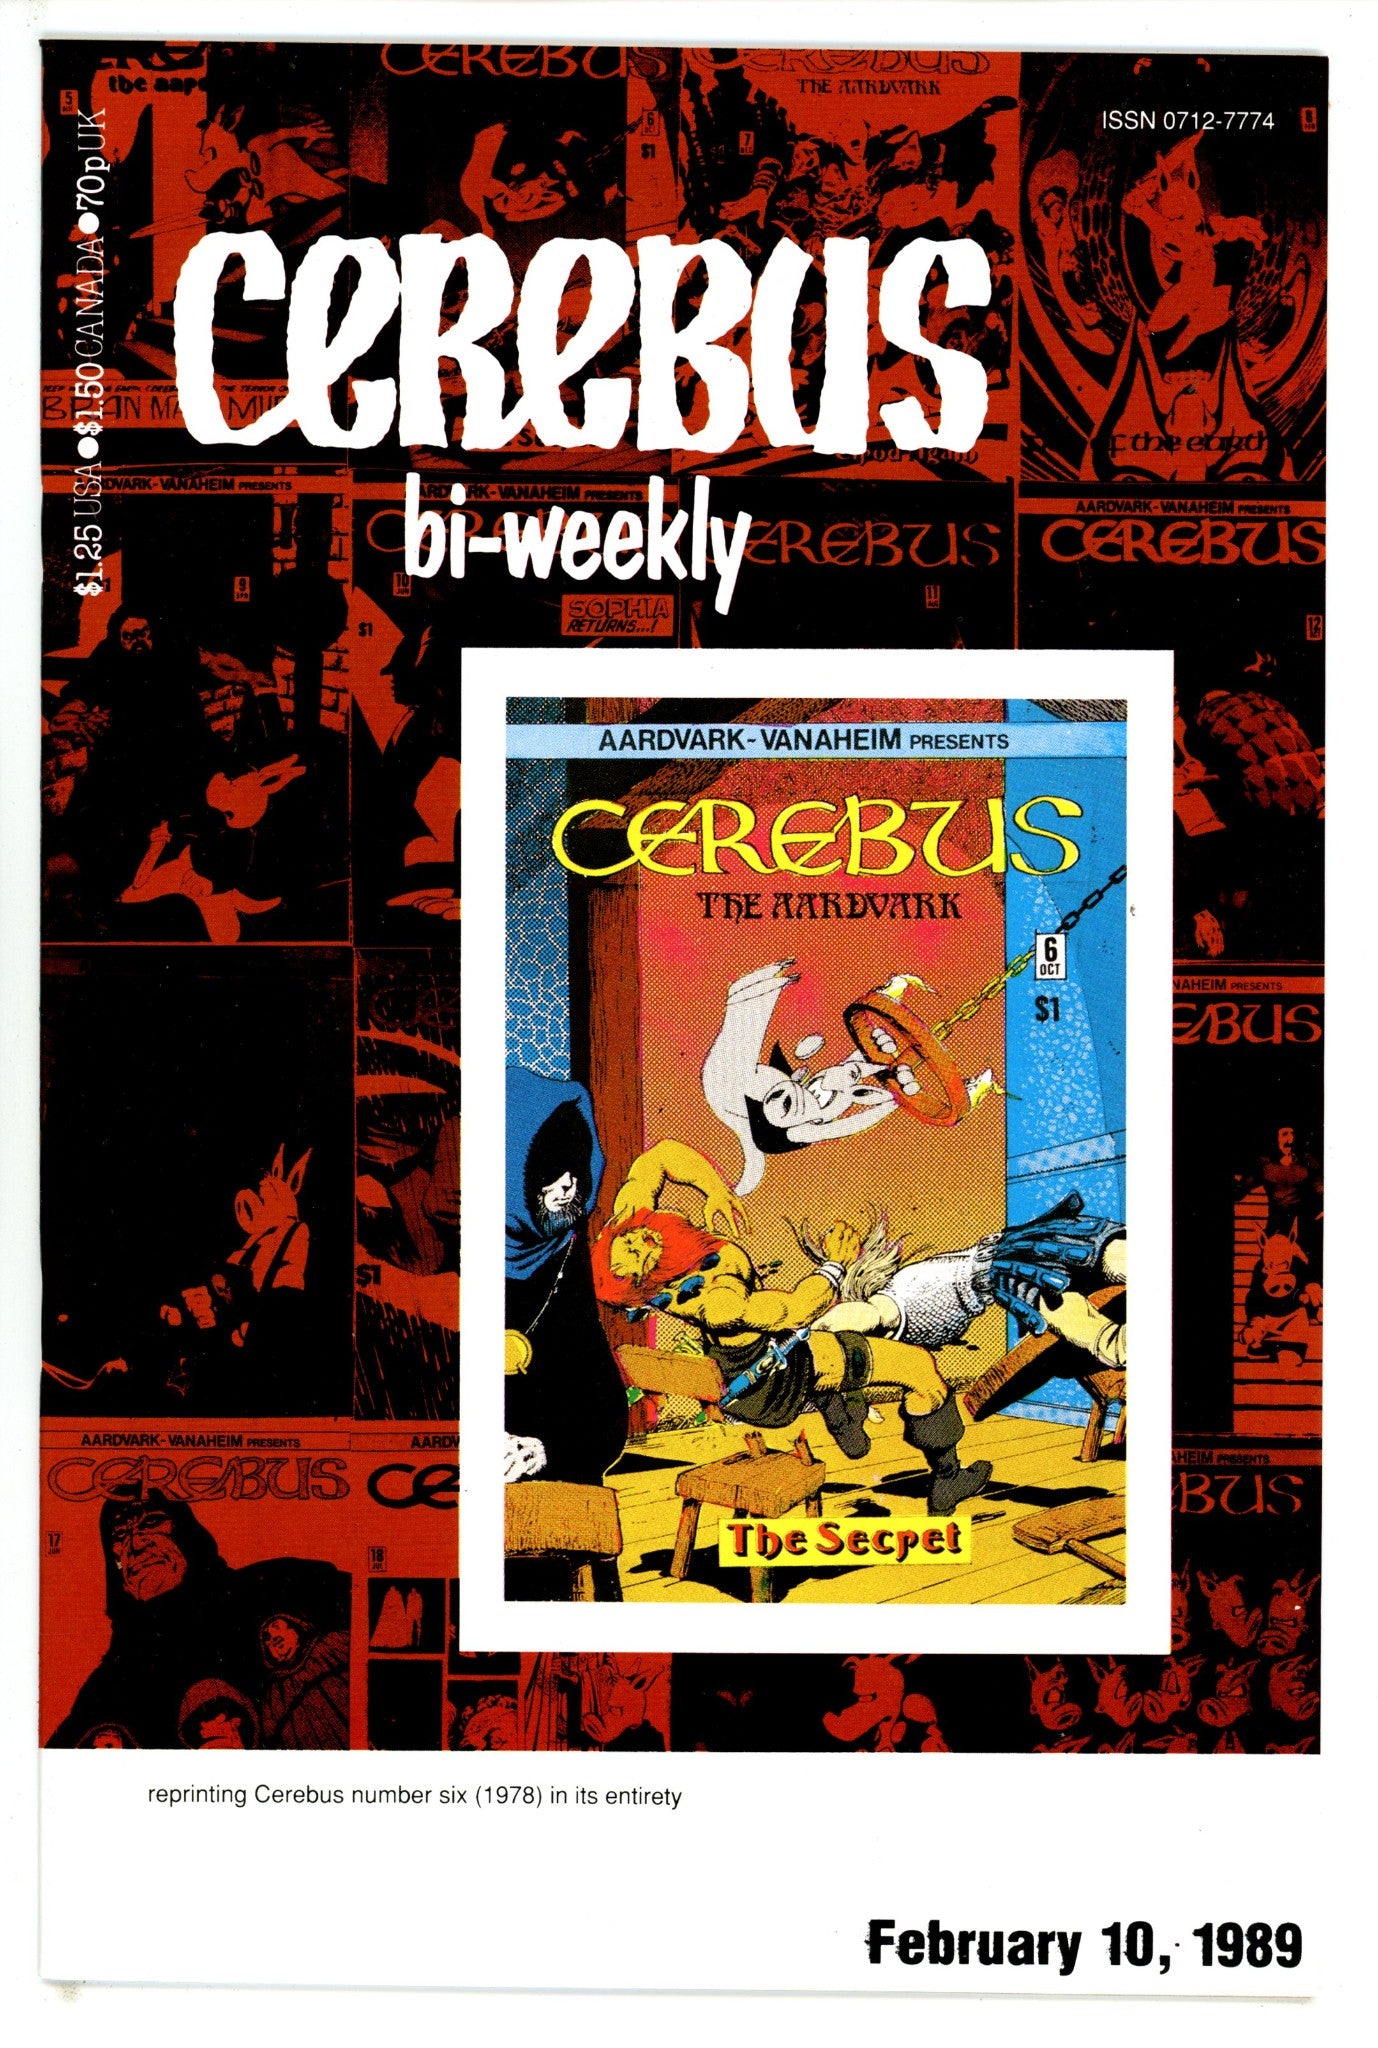 Cerebus Bi-Weekly 6 (1989)